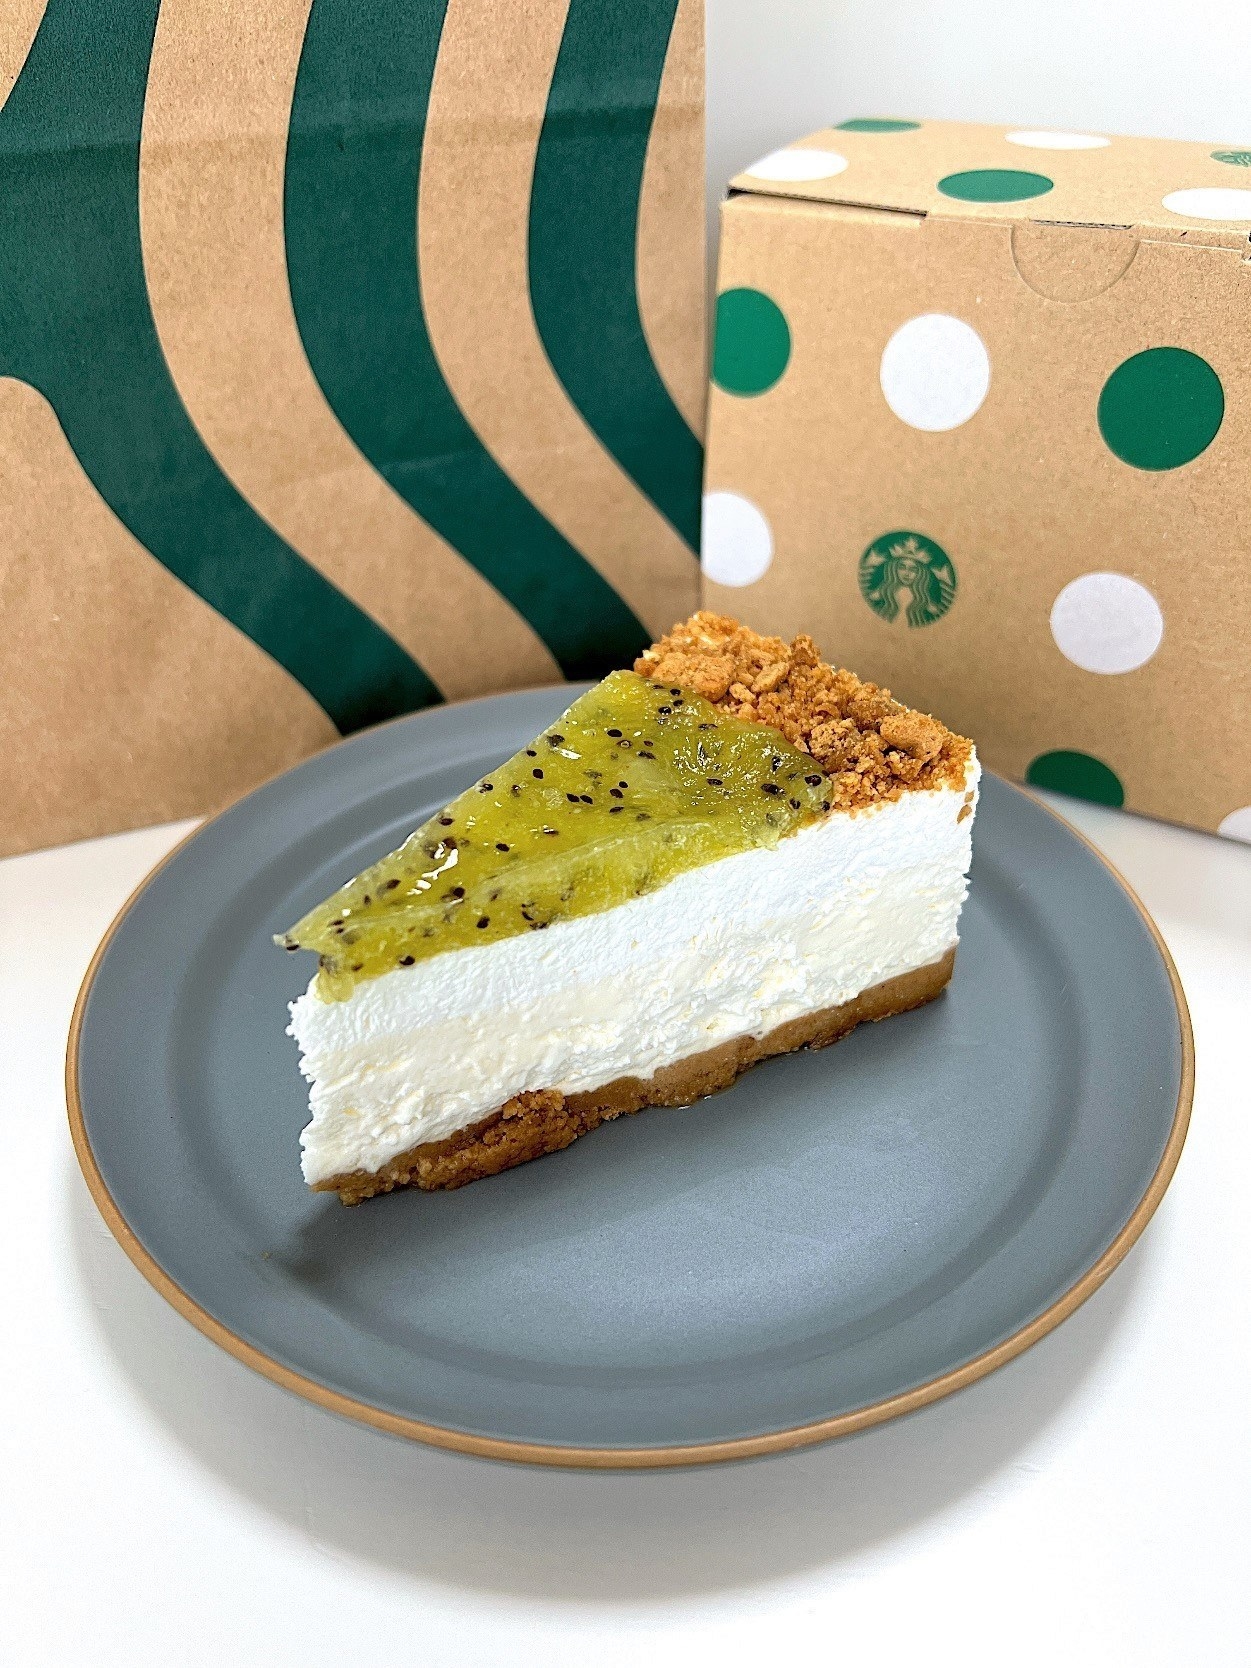 Starbucks（スターバックス）のおすすめスイーツ「キウイフルーツのレアチーズケーキ」果物たっぷりでさわやかな人気の夏デザート